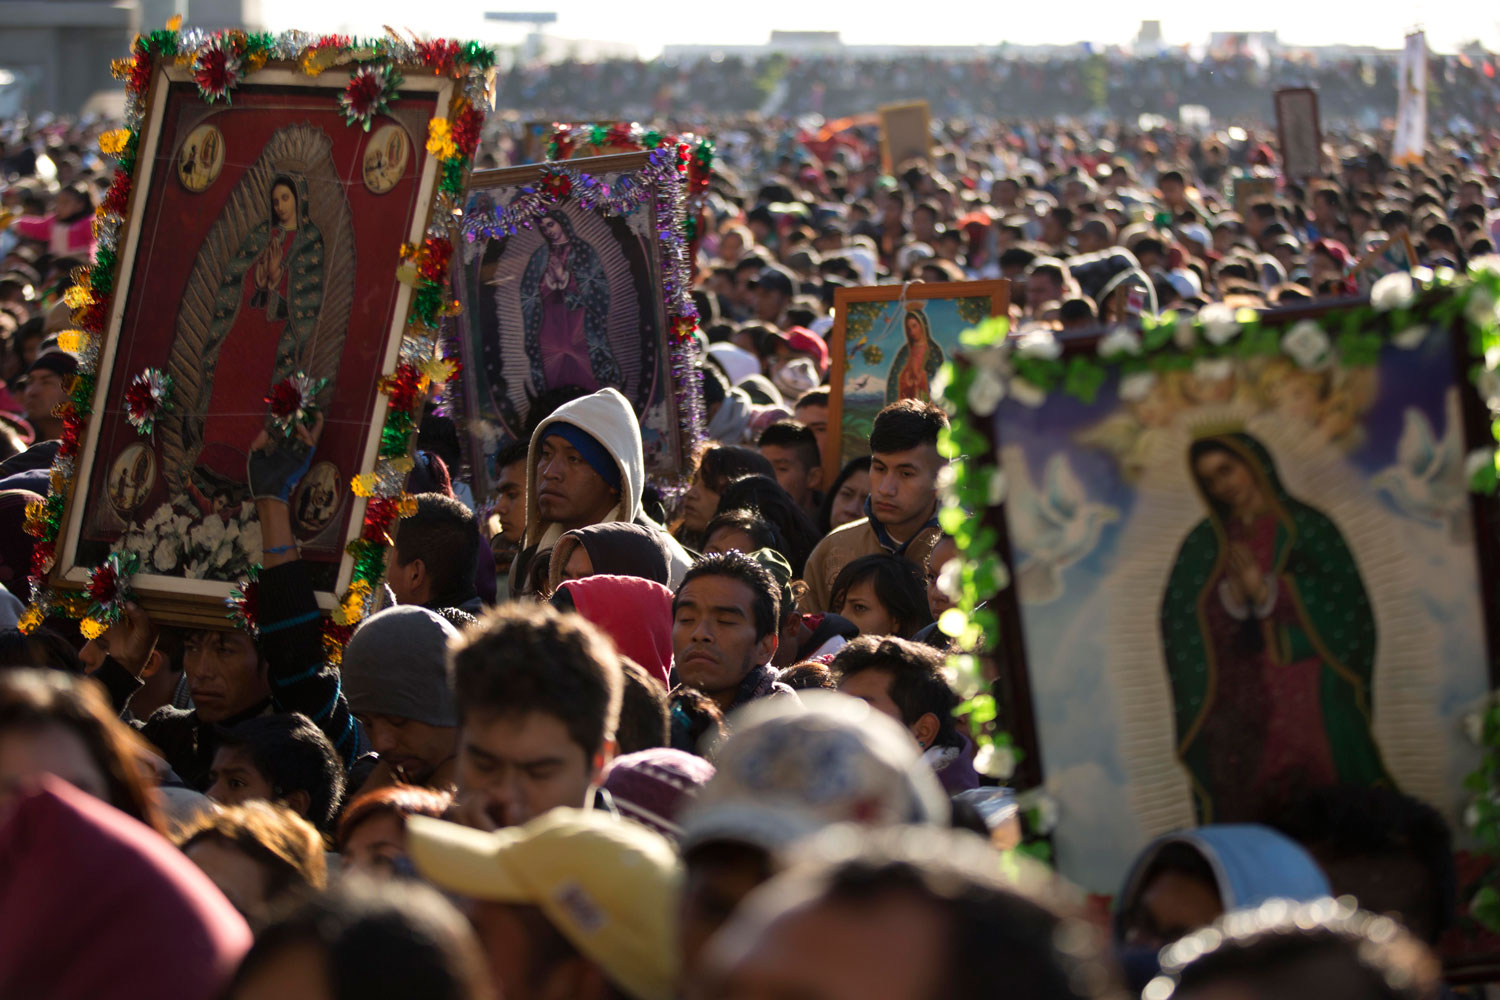 Miles de fieles católicos festejaron este jueves el día de la Virgen de Guadalupe en México